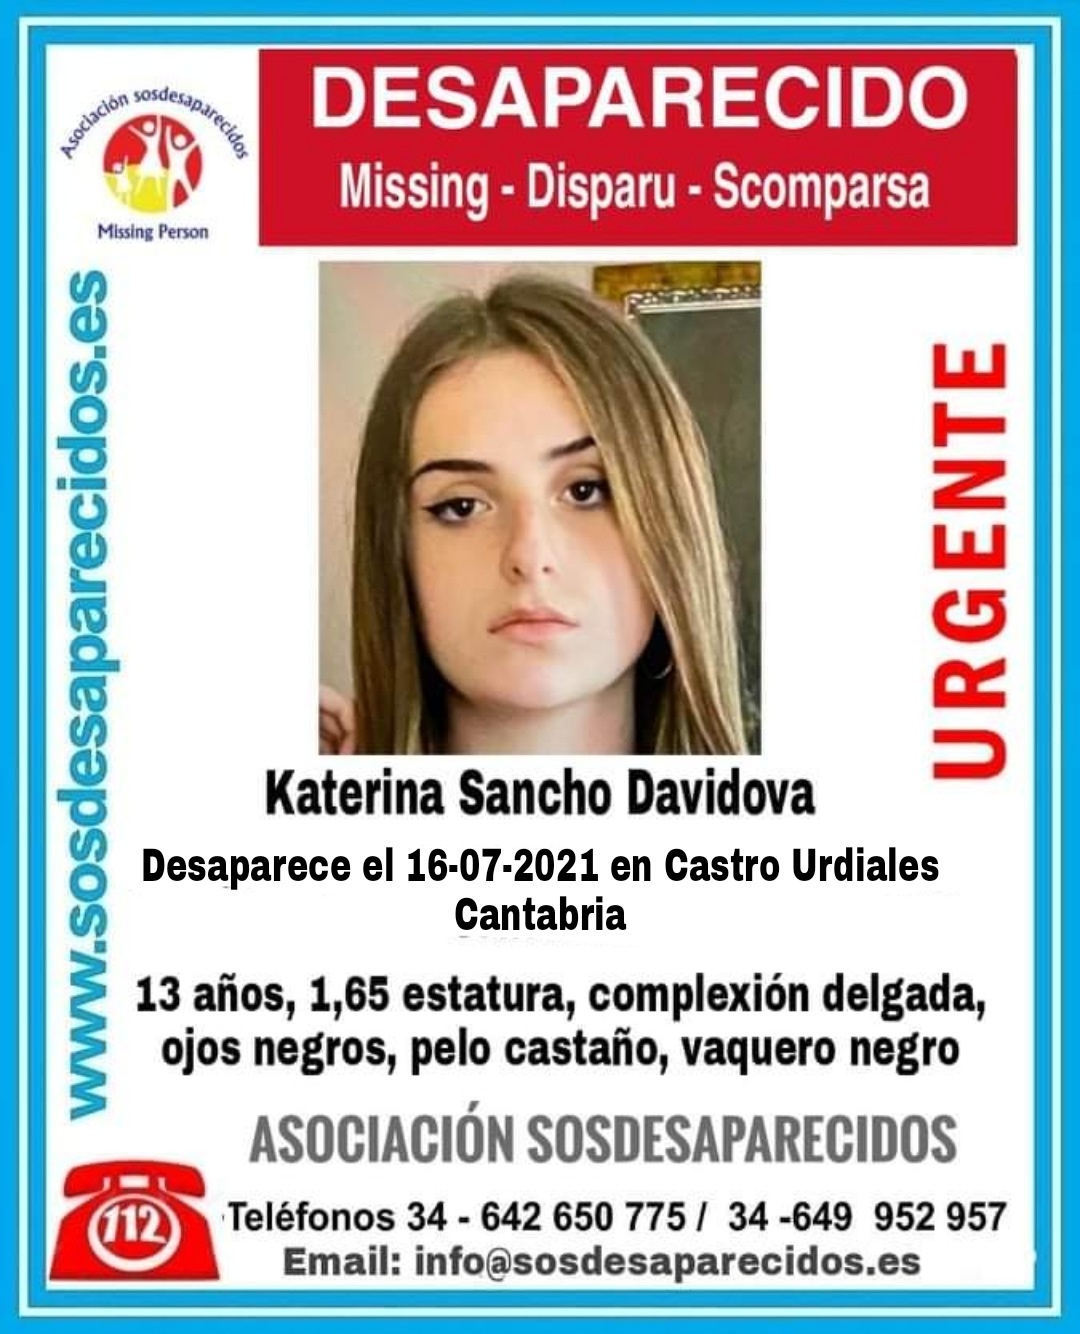  Se busca a una joven de 13 años desaparecida en Castro Urdiales